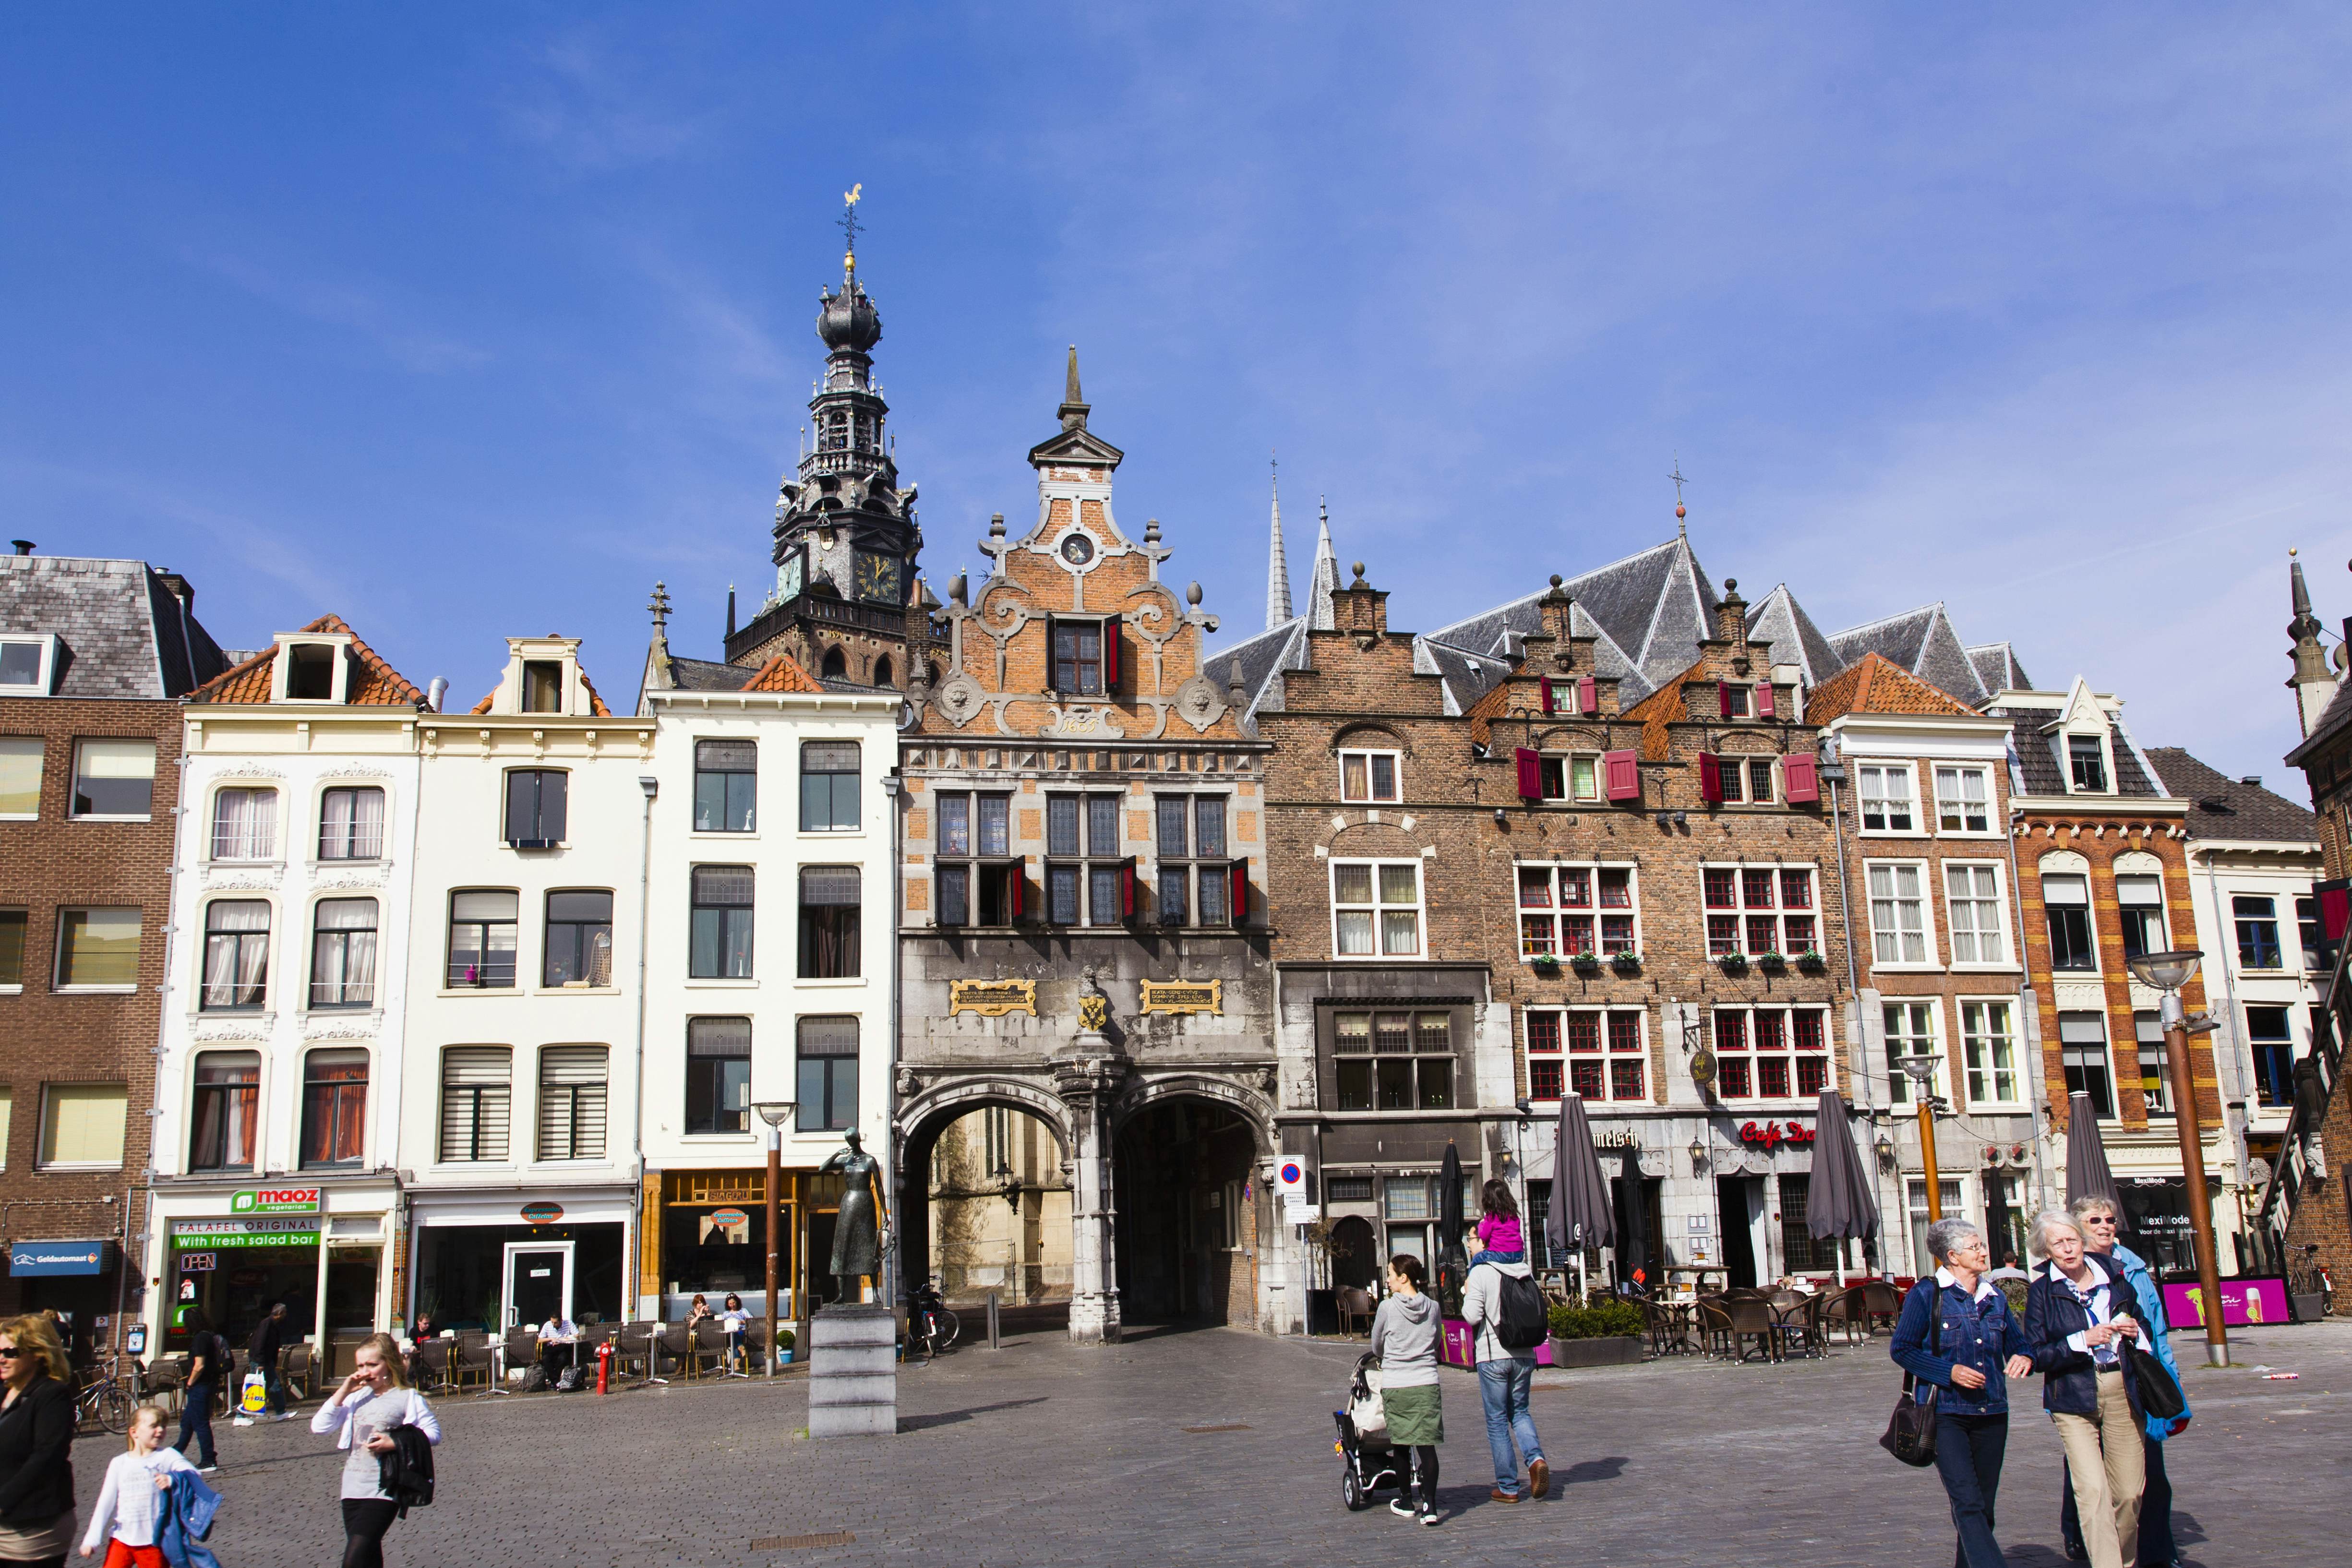 Bondgenoot schoner spek Nijmegen travel - Lonely Planet | The Netherlands, Europe